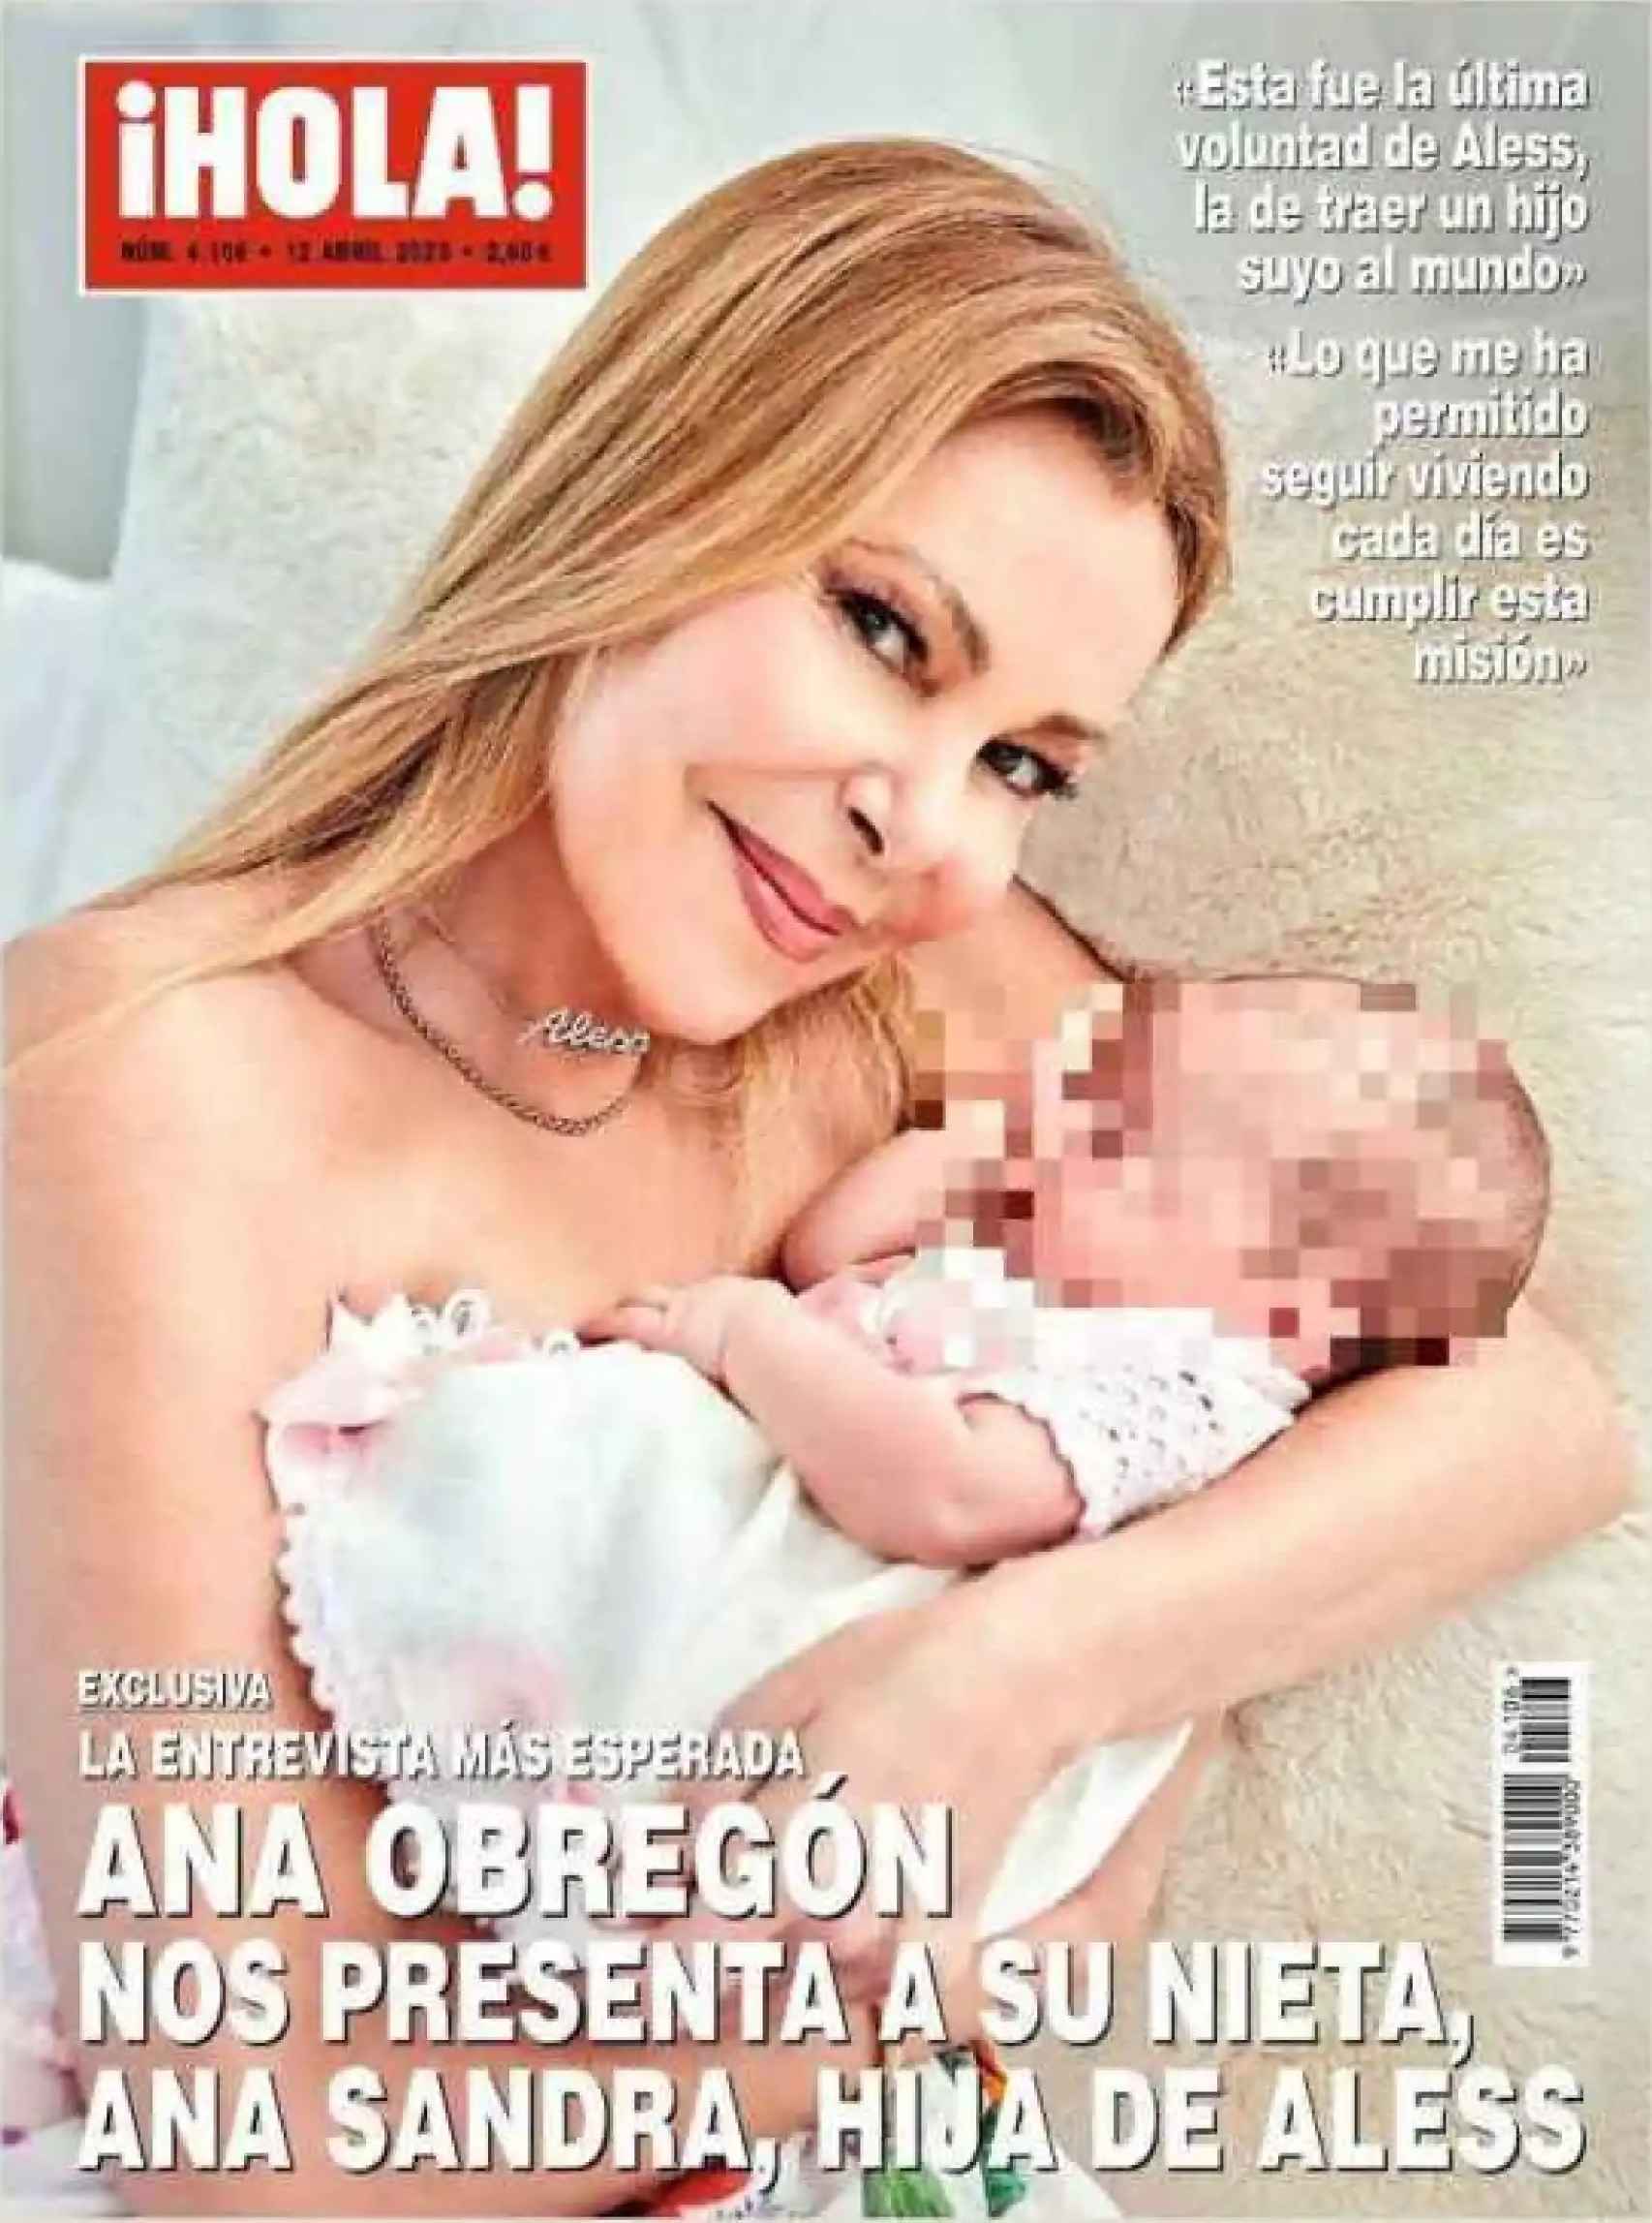 Portada de la revista ¡Hola! con Ana Obregón y su nieta.